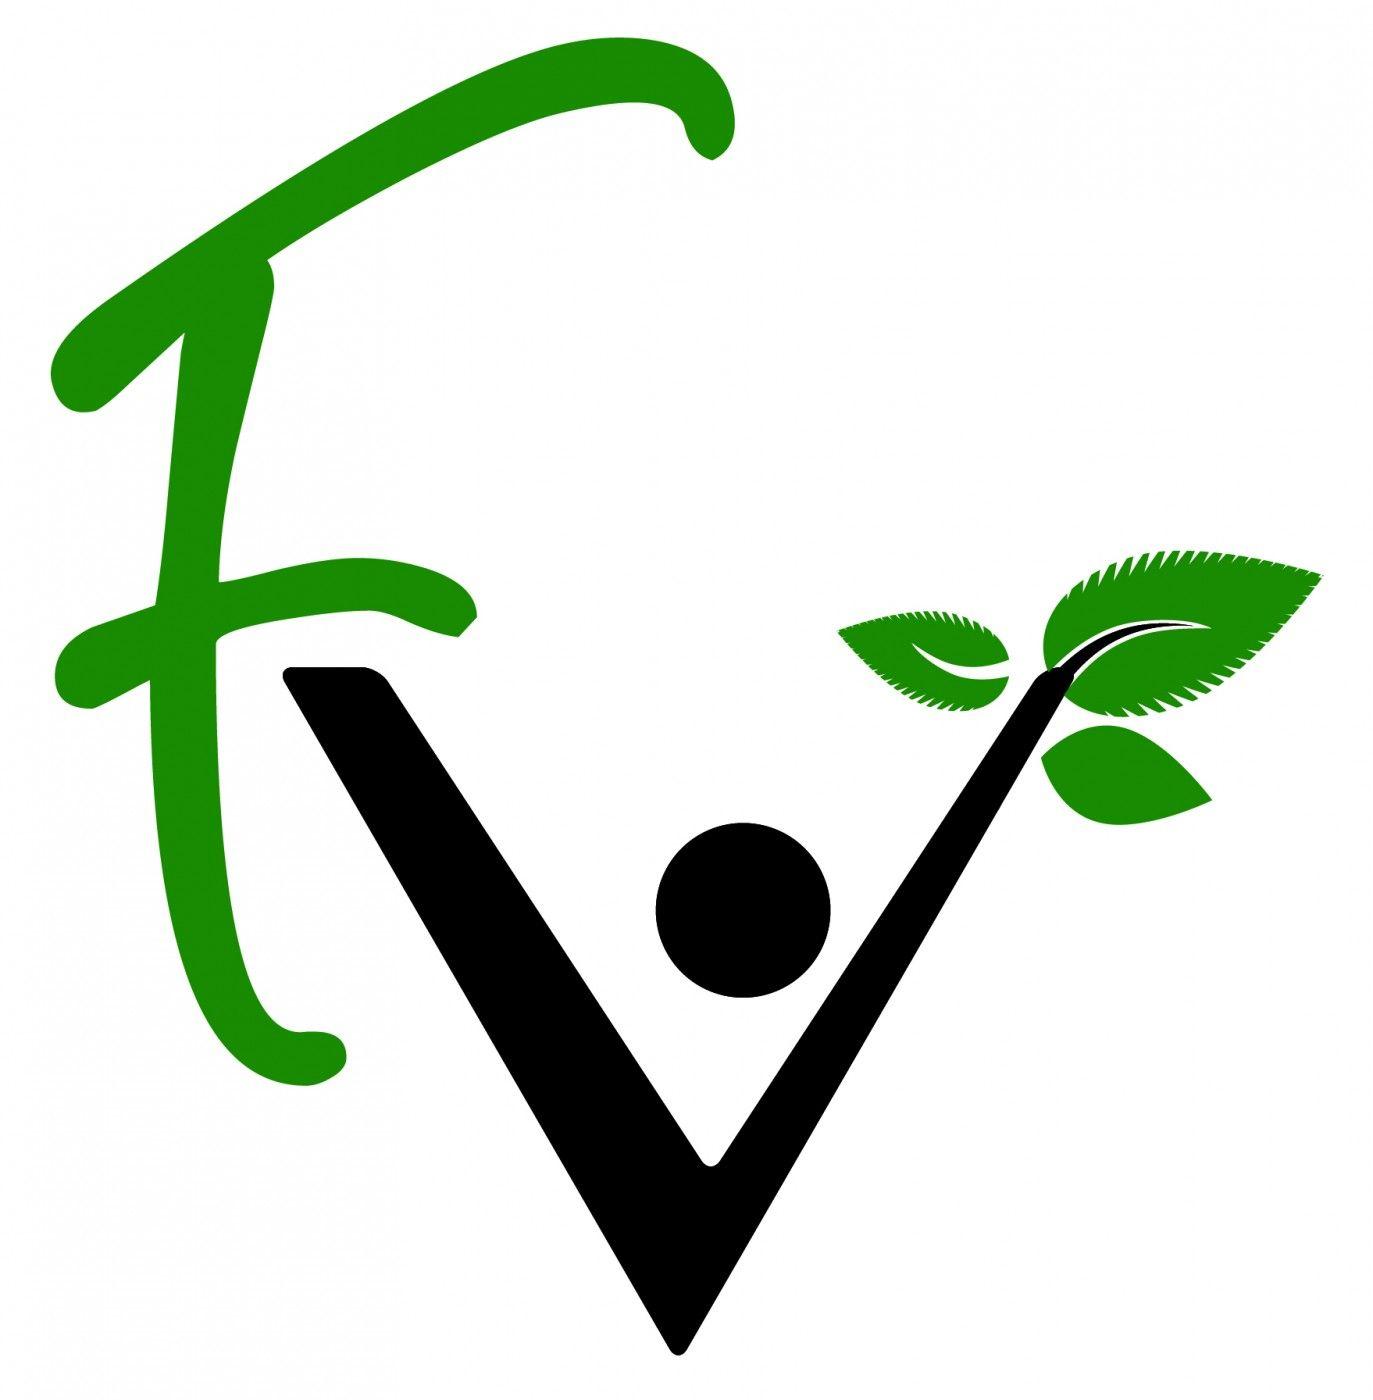 FV Logo - Fv Logos